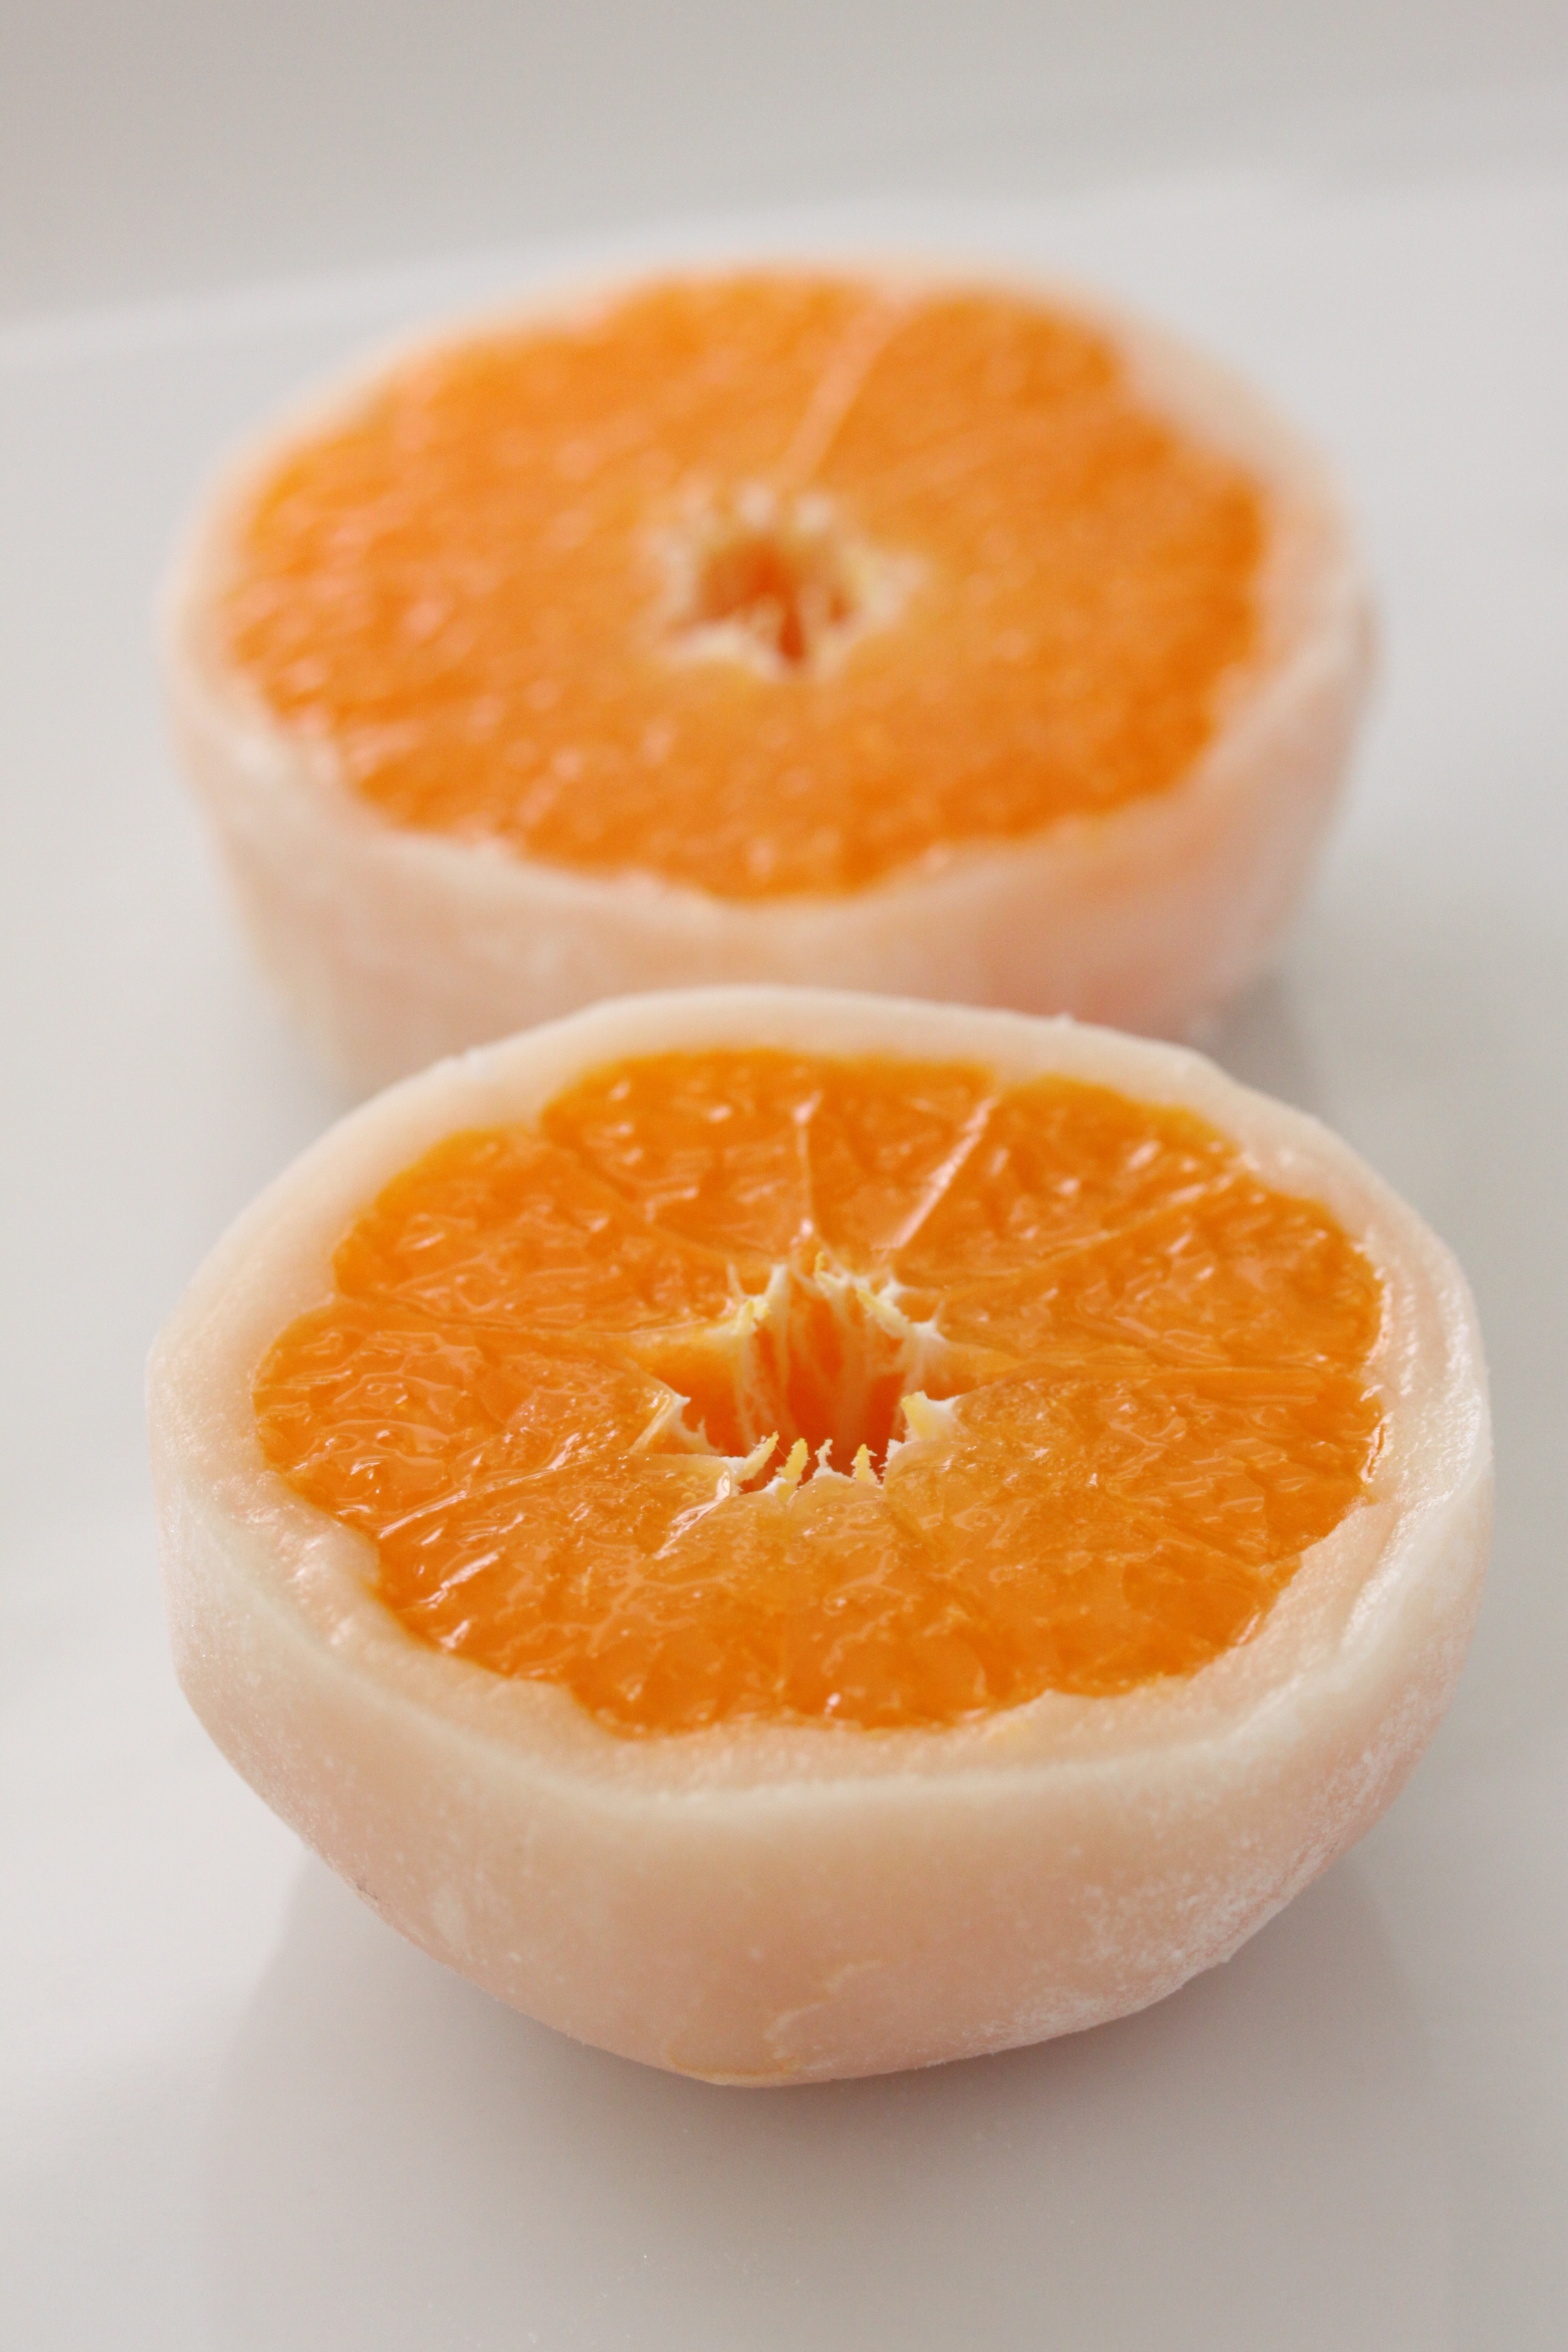 一福百果柑橘大福食べ比べセット